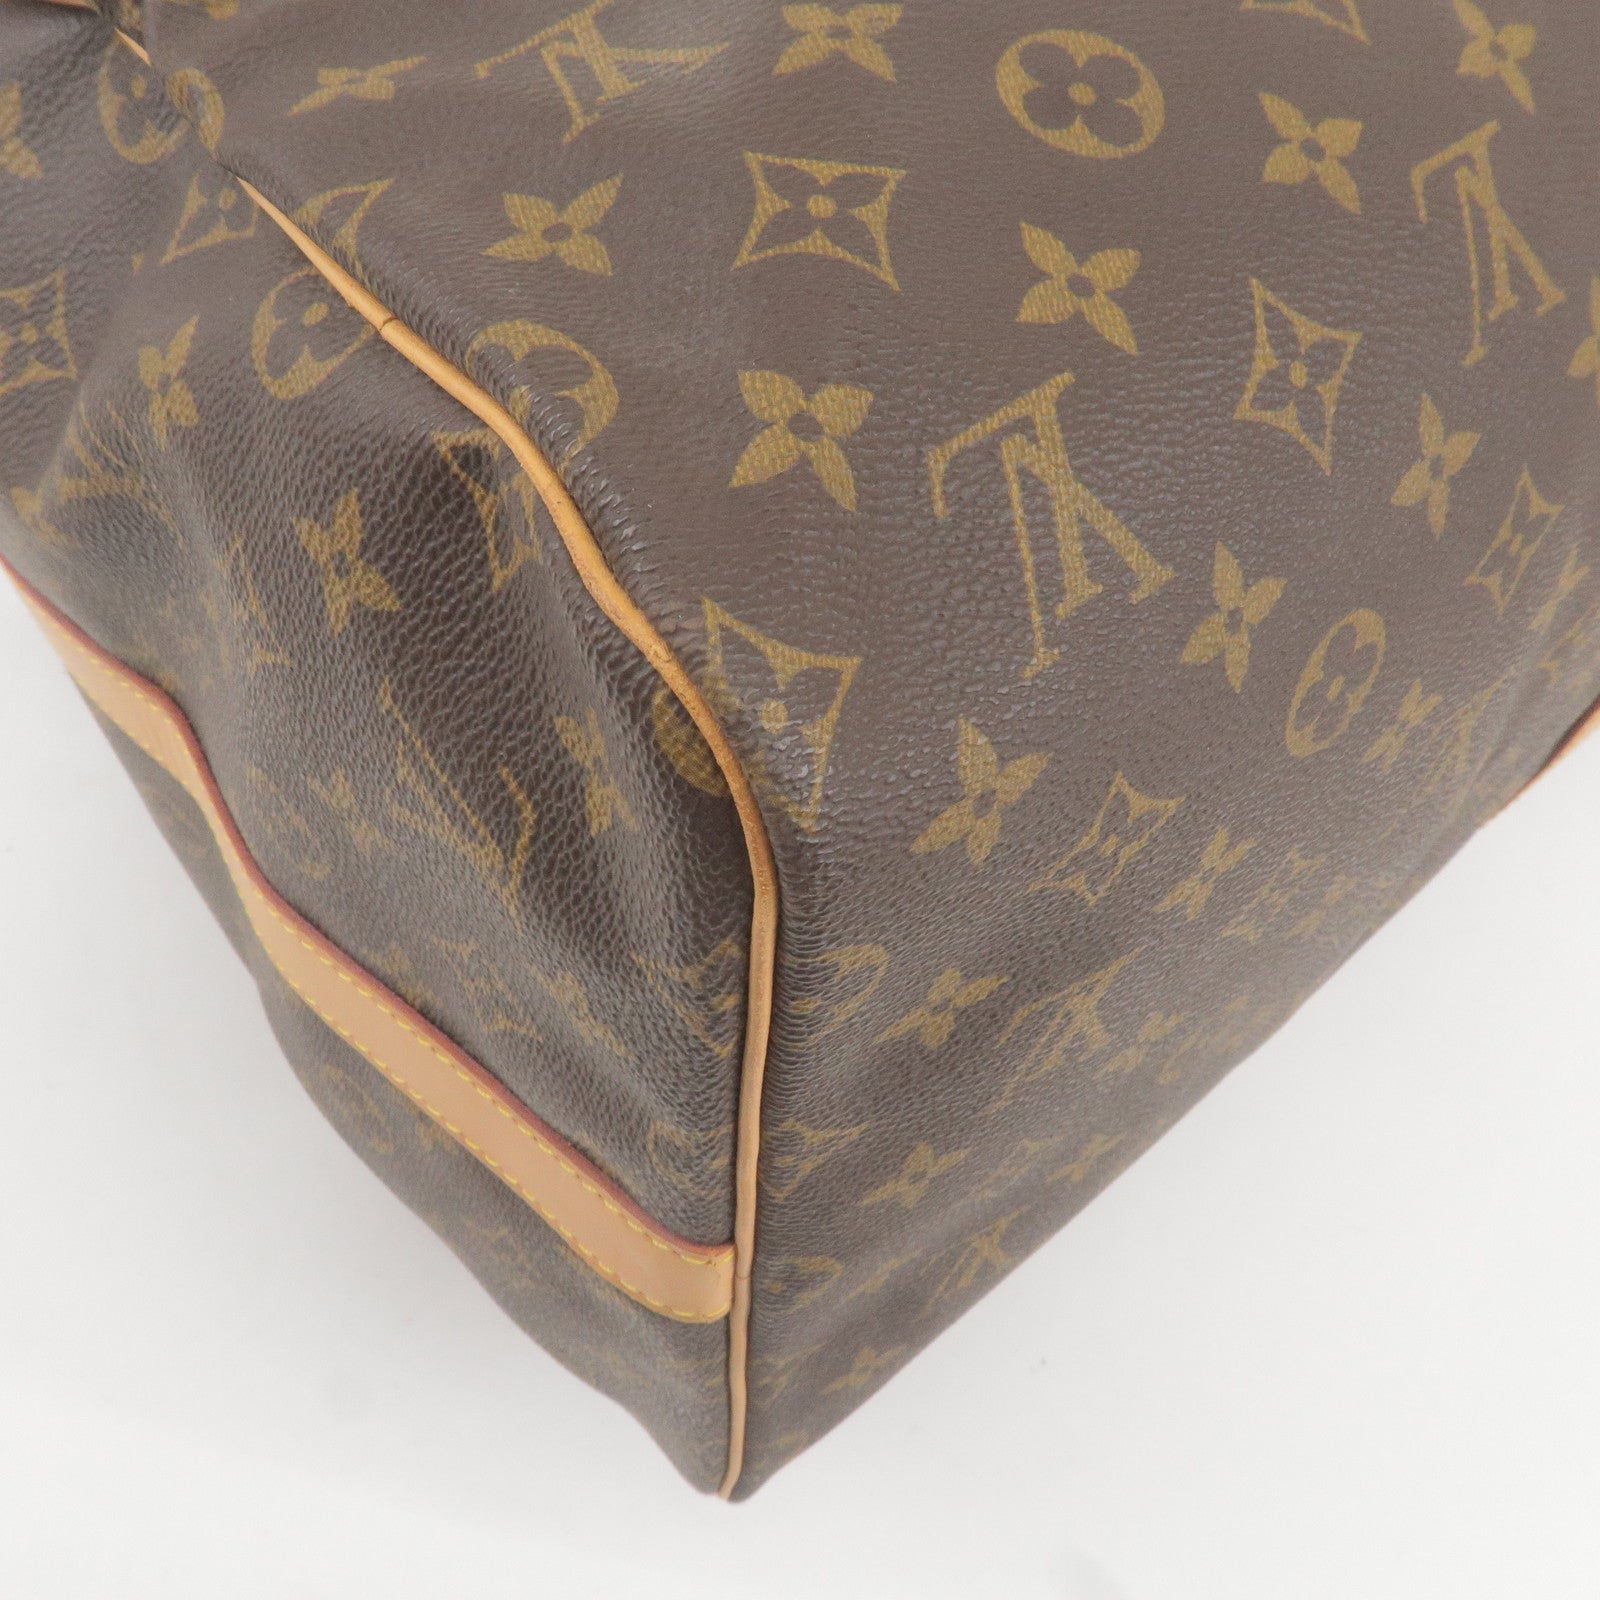 Louis Vuitton Damier Ebene Duomo Messenger Bag - A World Of Goods